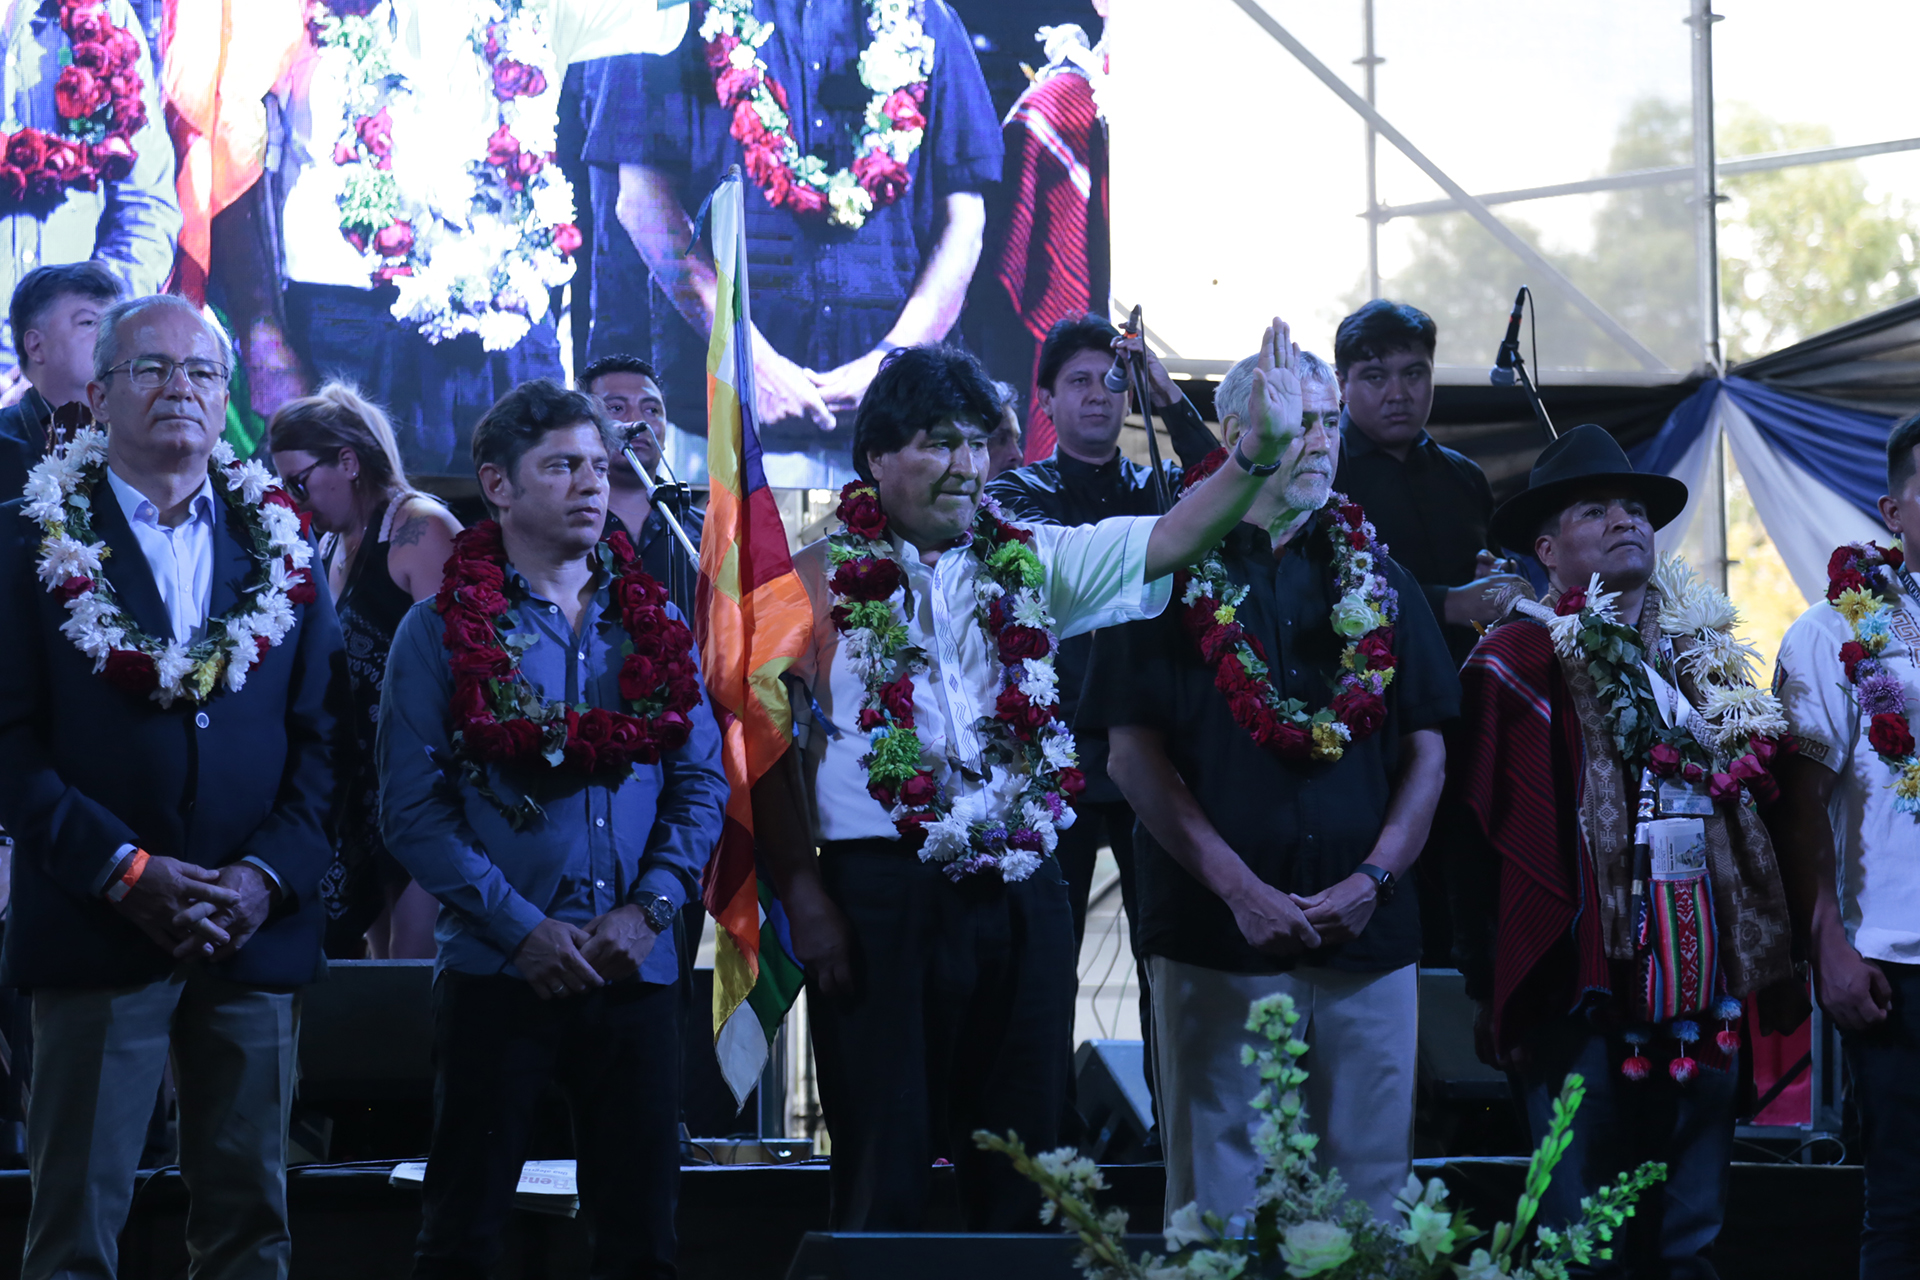 Acto antiimperialista de Evo Morales en Avellaneda: “Haga lo que haga la derecha, vamos a seguir unidos”